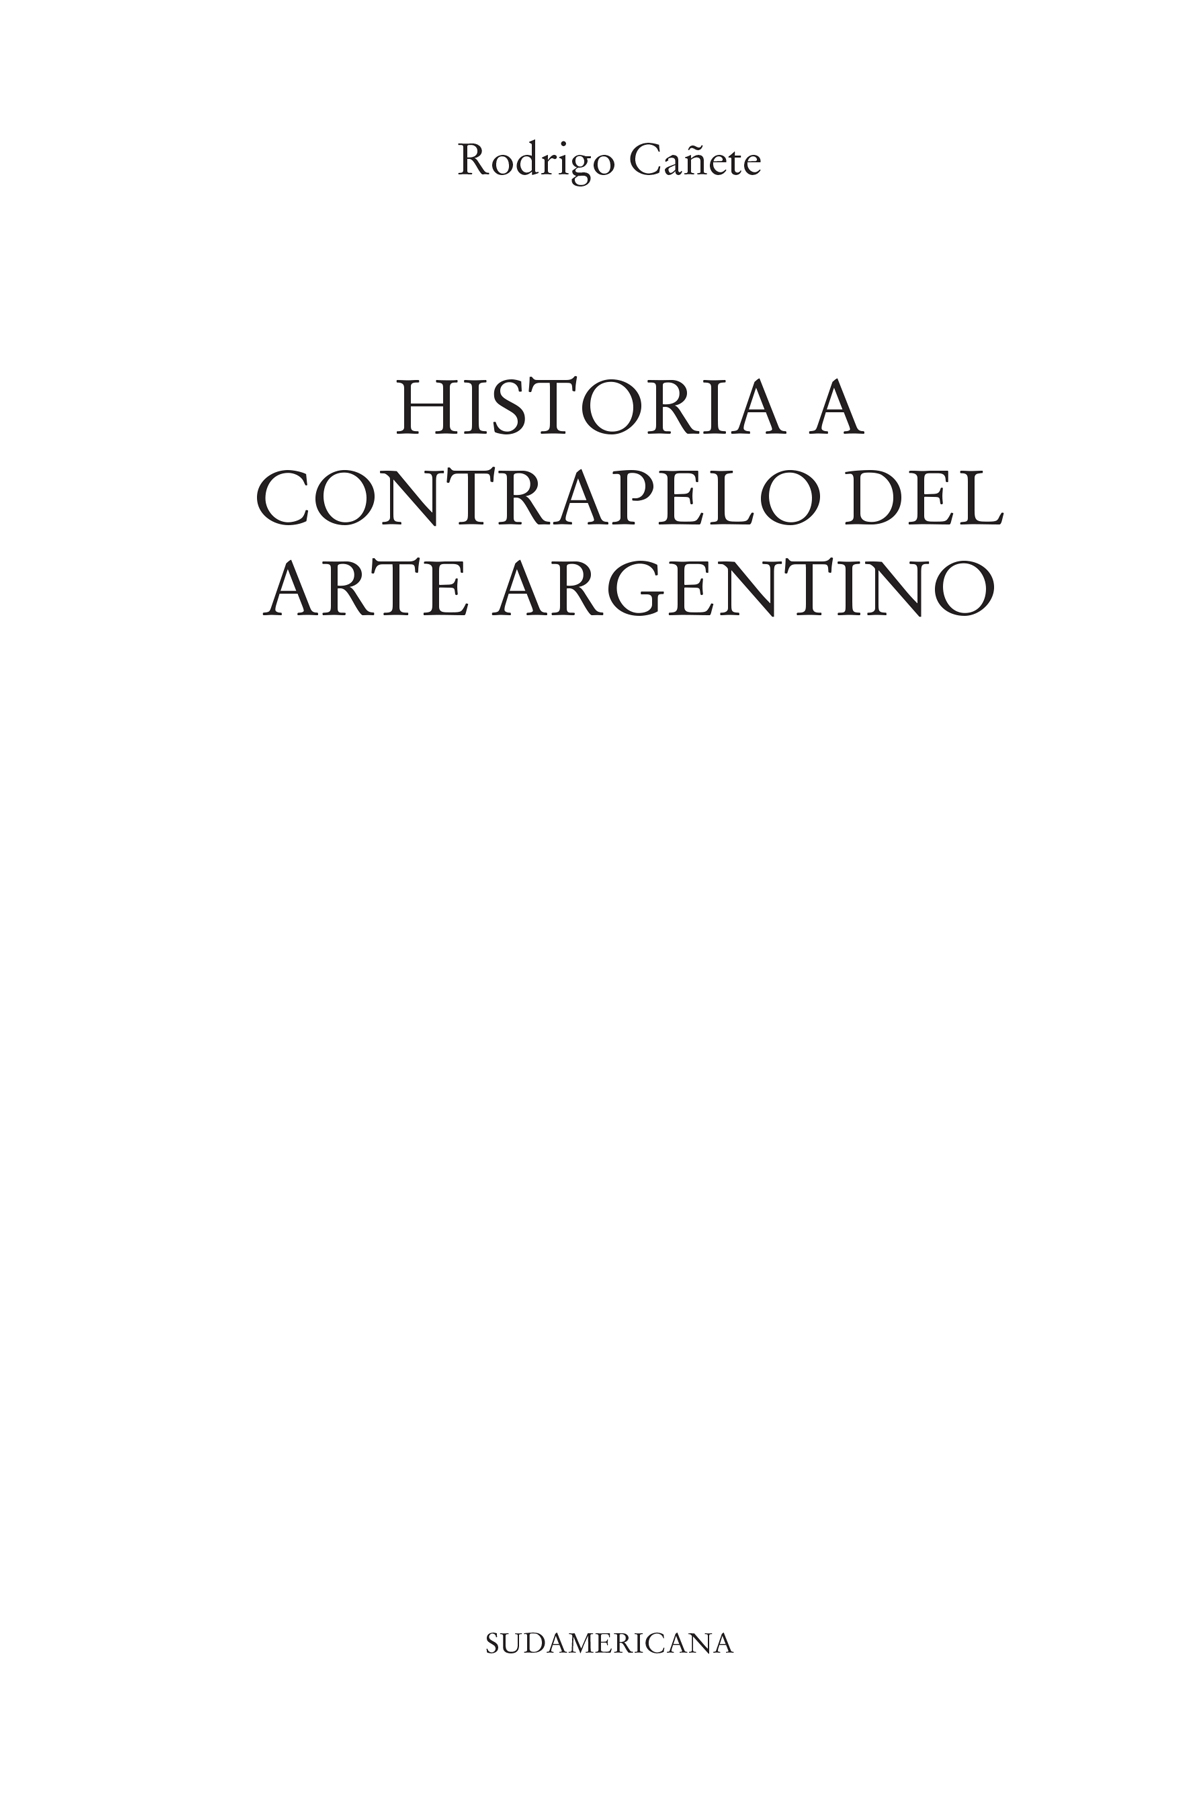 Historia a contrapelo del arte argentino - image 2